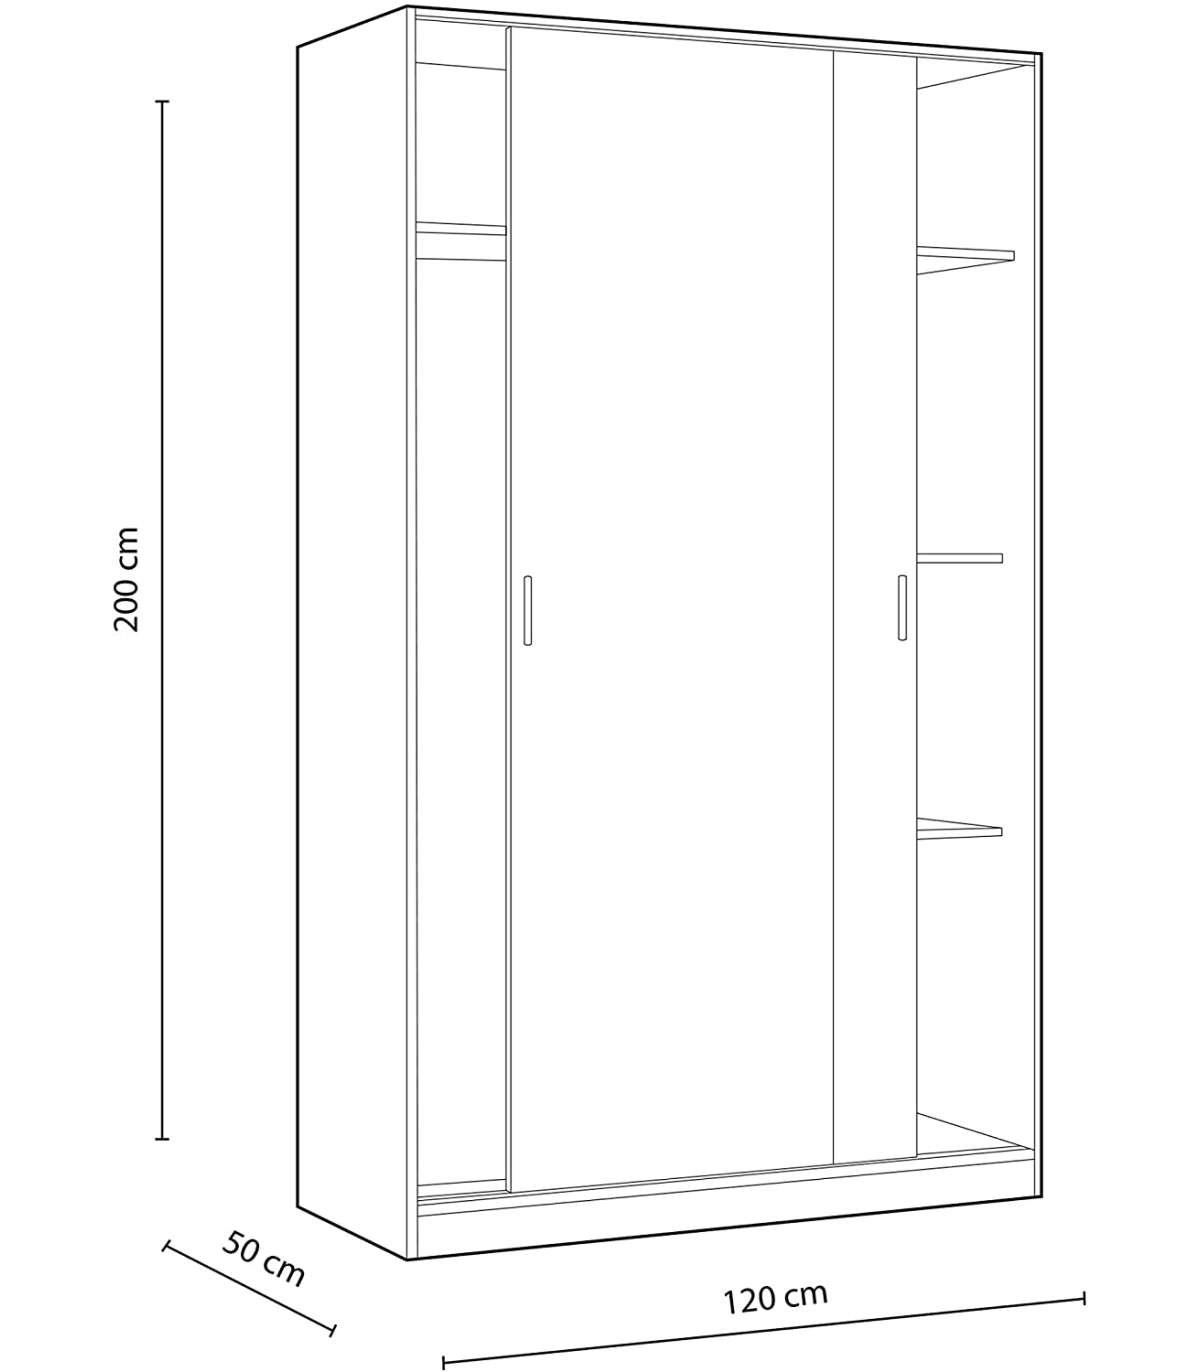 FrsArmario puertas correderas Plus Noon acabado combinado con blanco 200 cm(alto)120 cm(ancho)50 cm(largo)